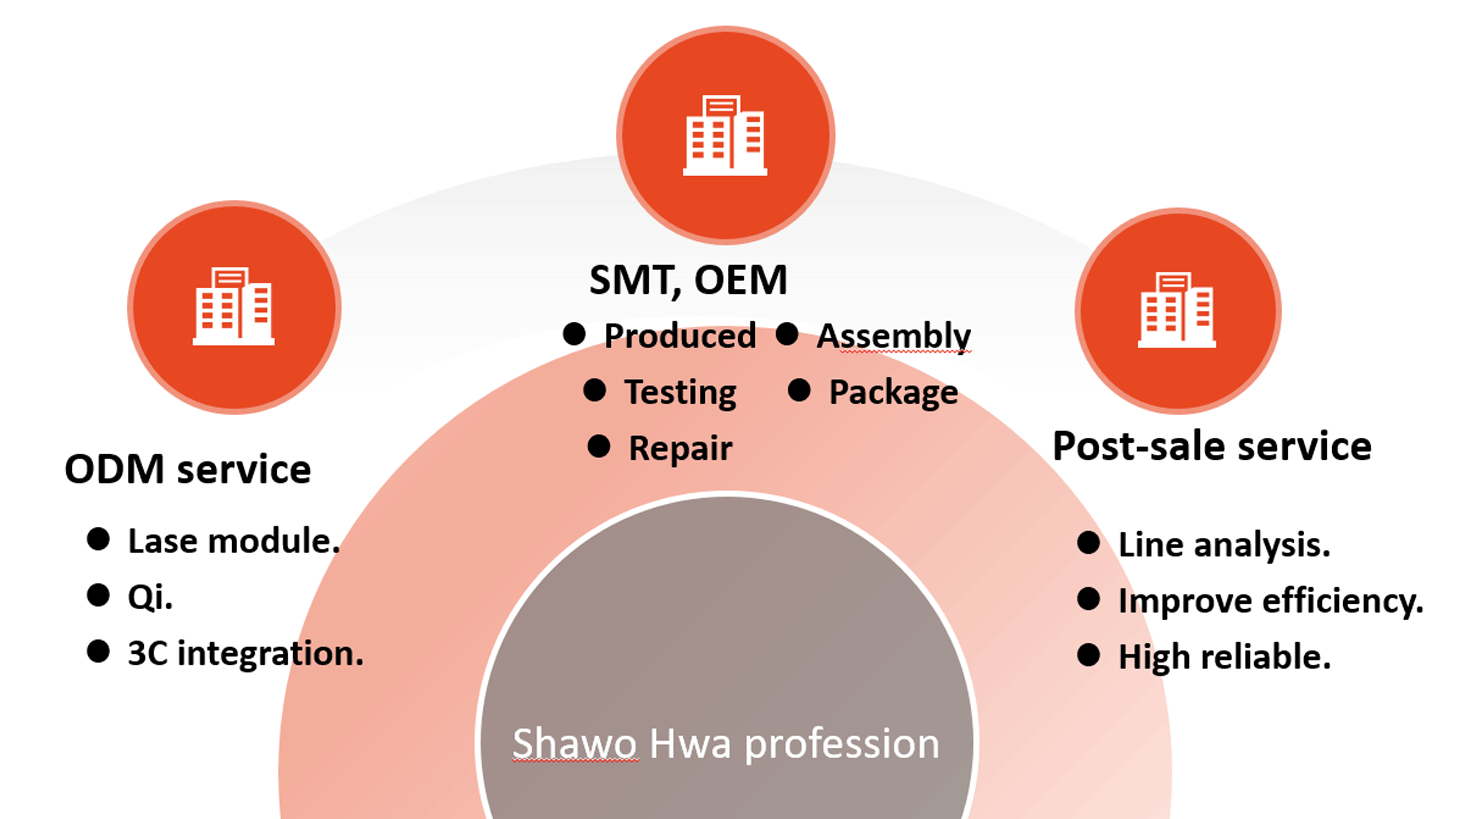 Shawohwa Enterprise professional